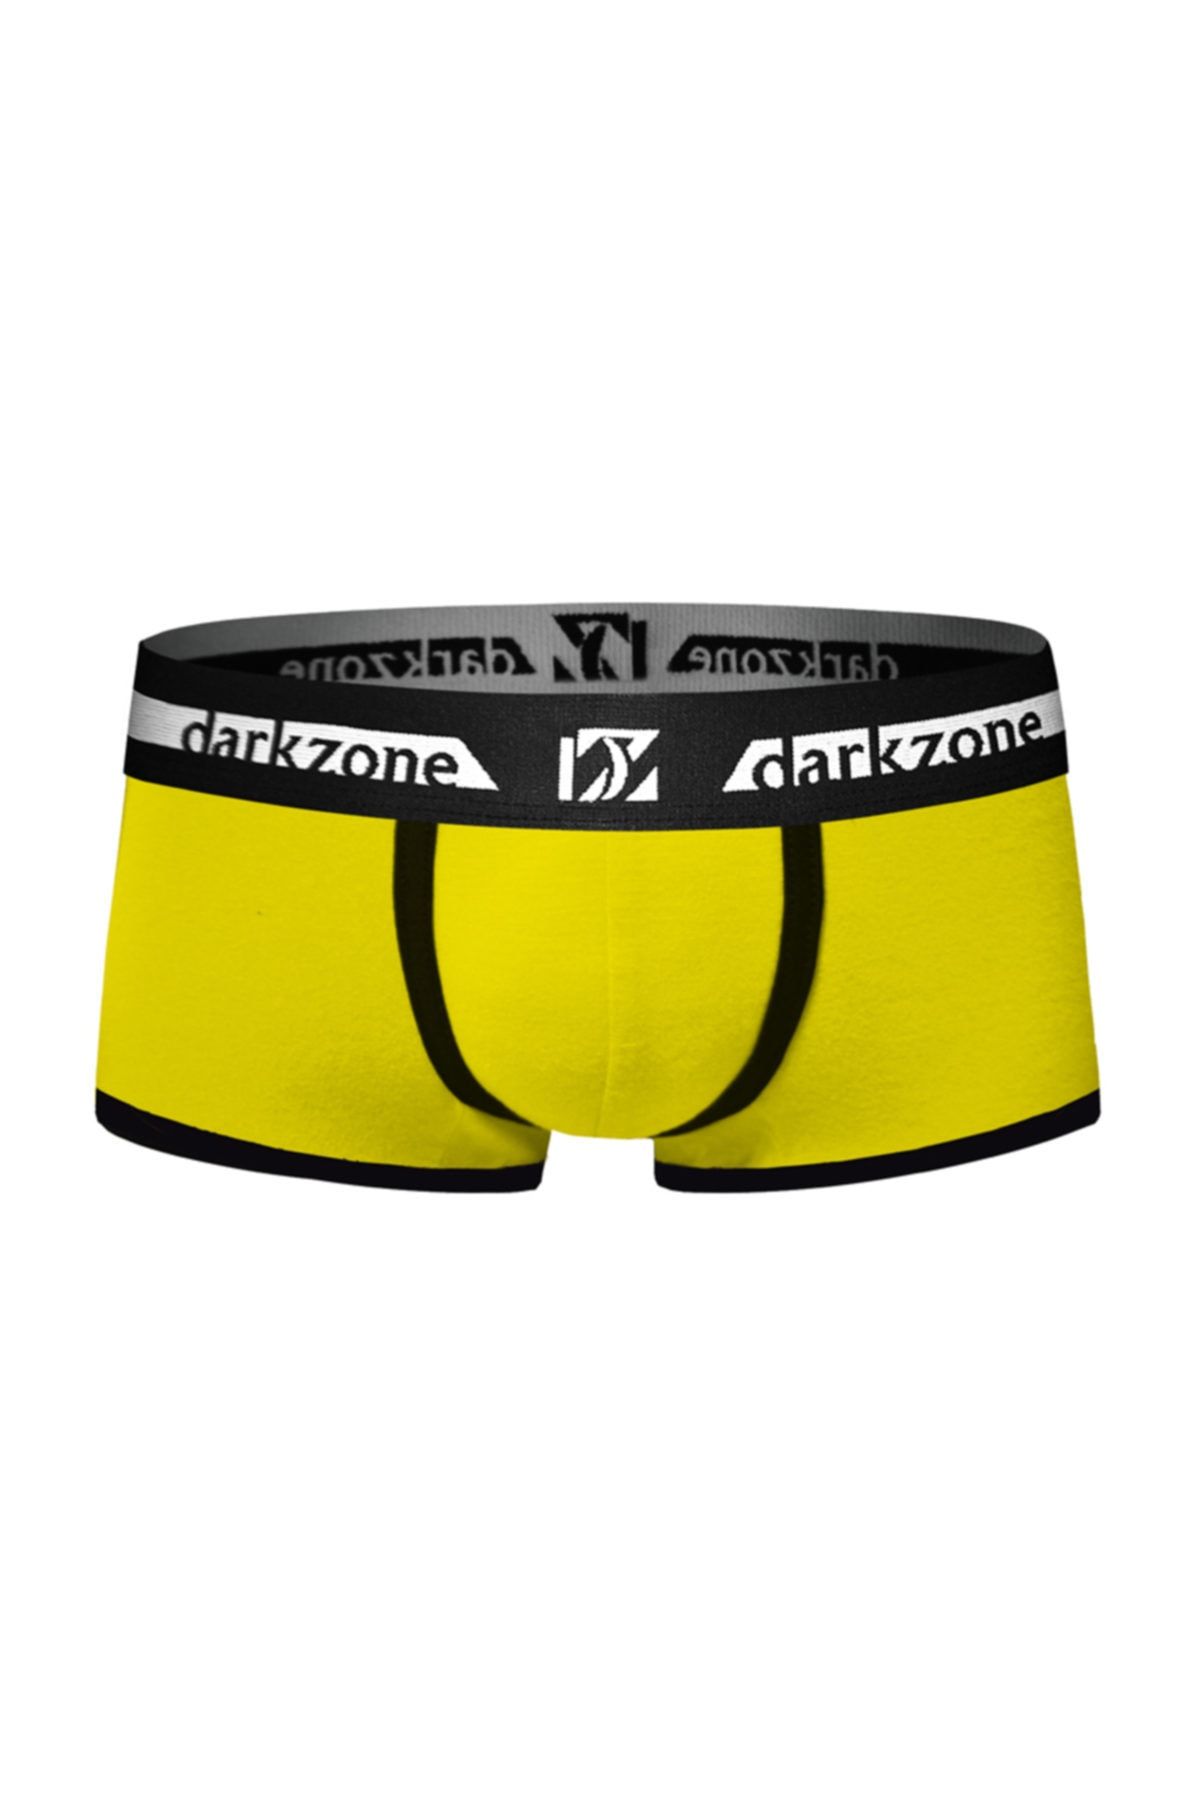 Darkzone Siyah Biyeli Kısa Sarı Erkek Boxer